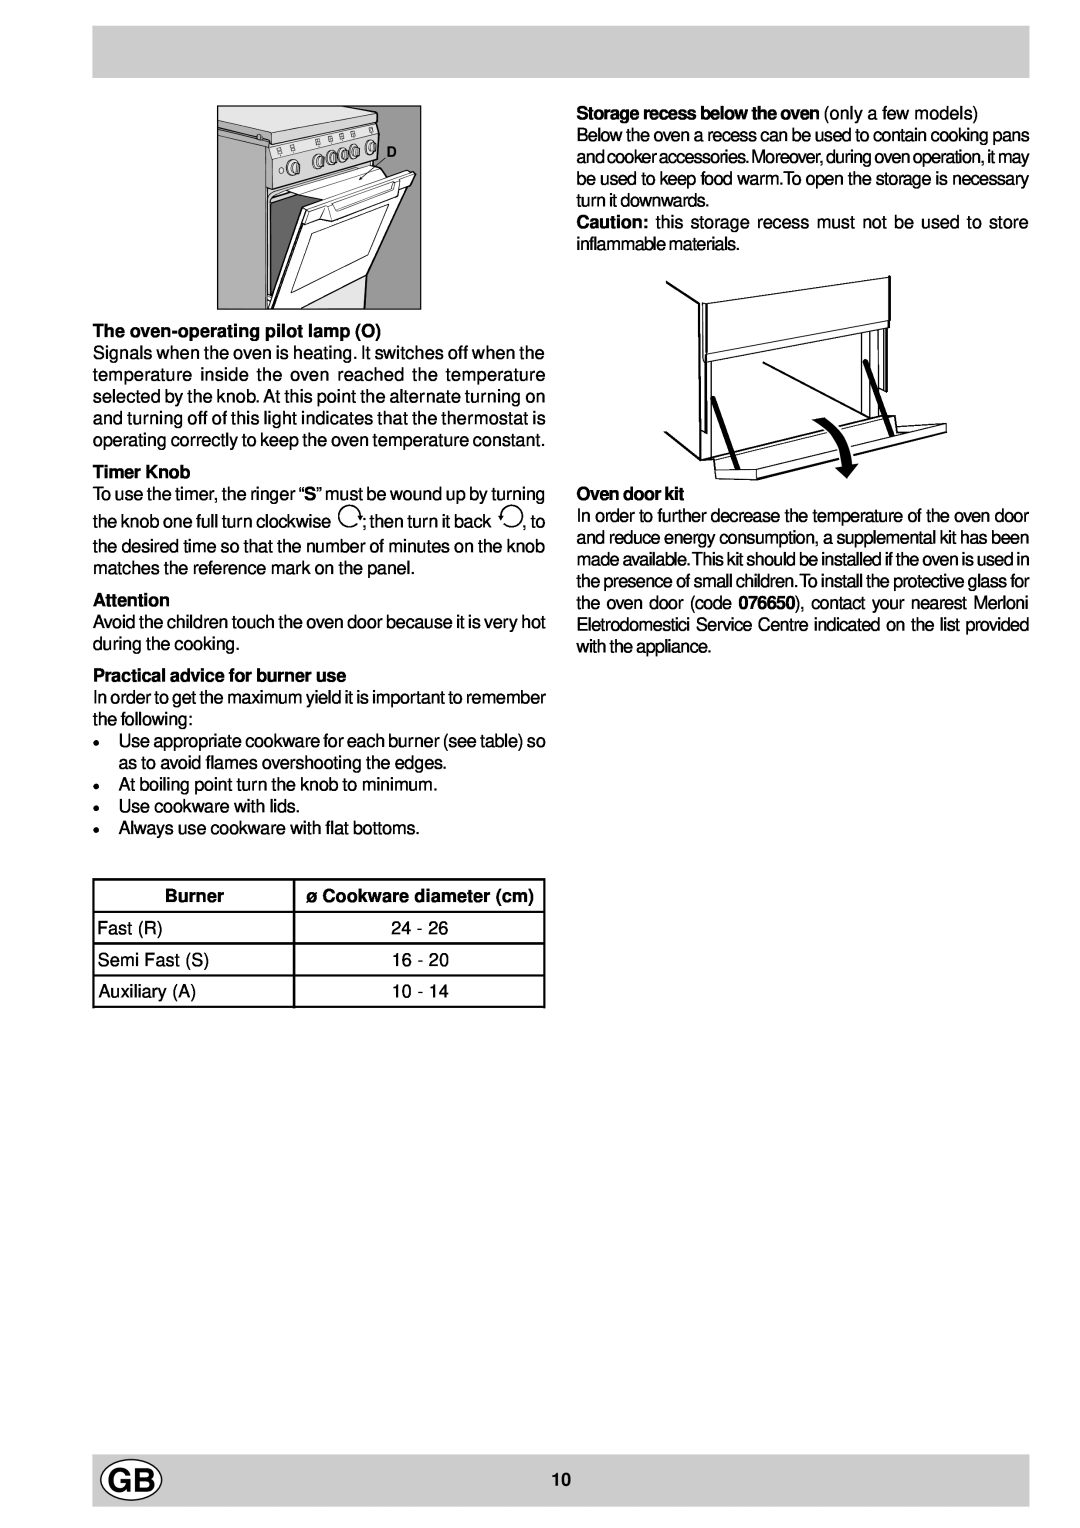 Indesit K 344 E.C/G The oven-operatingpilot lamp O, Timer Knob, Practical advice for burner use, Oven door kit, Burner 